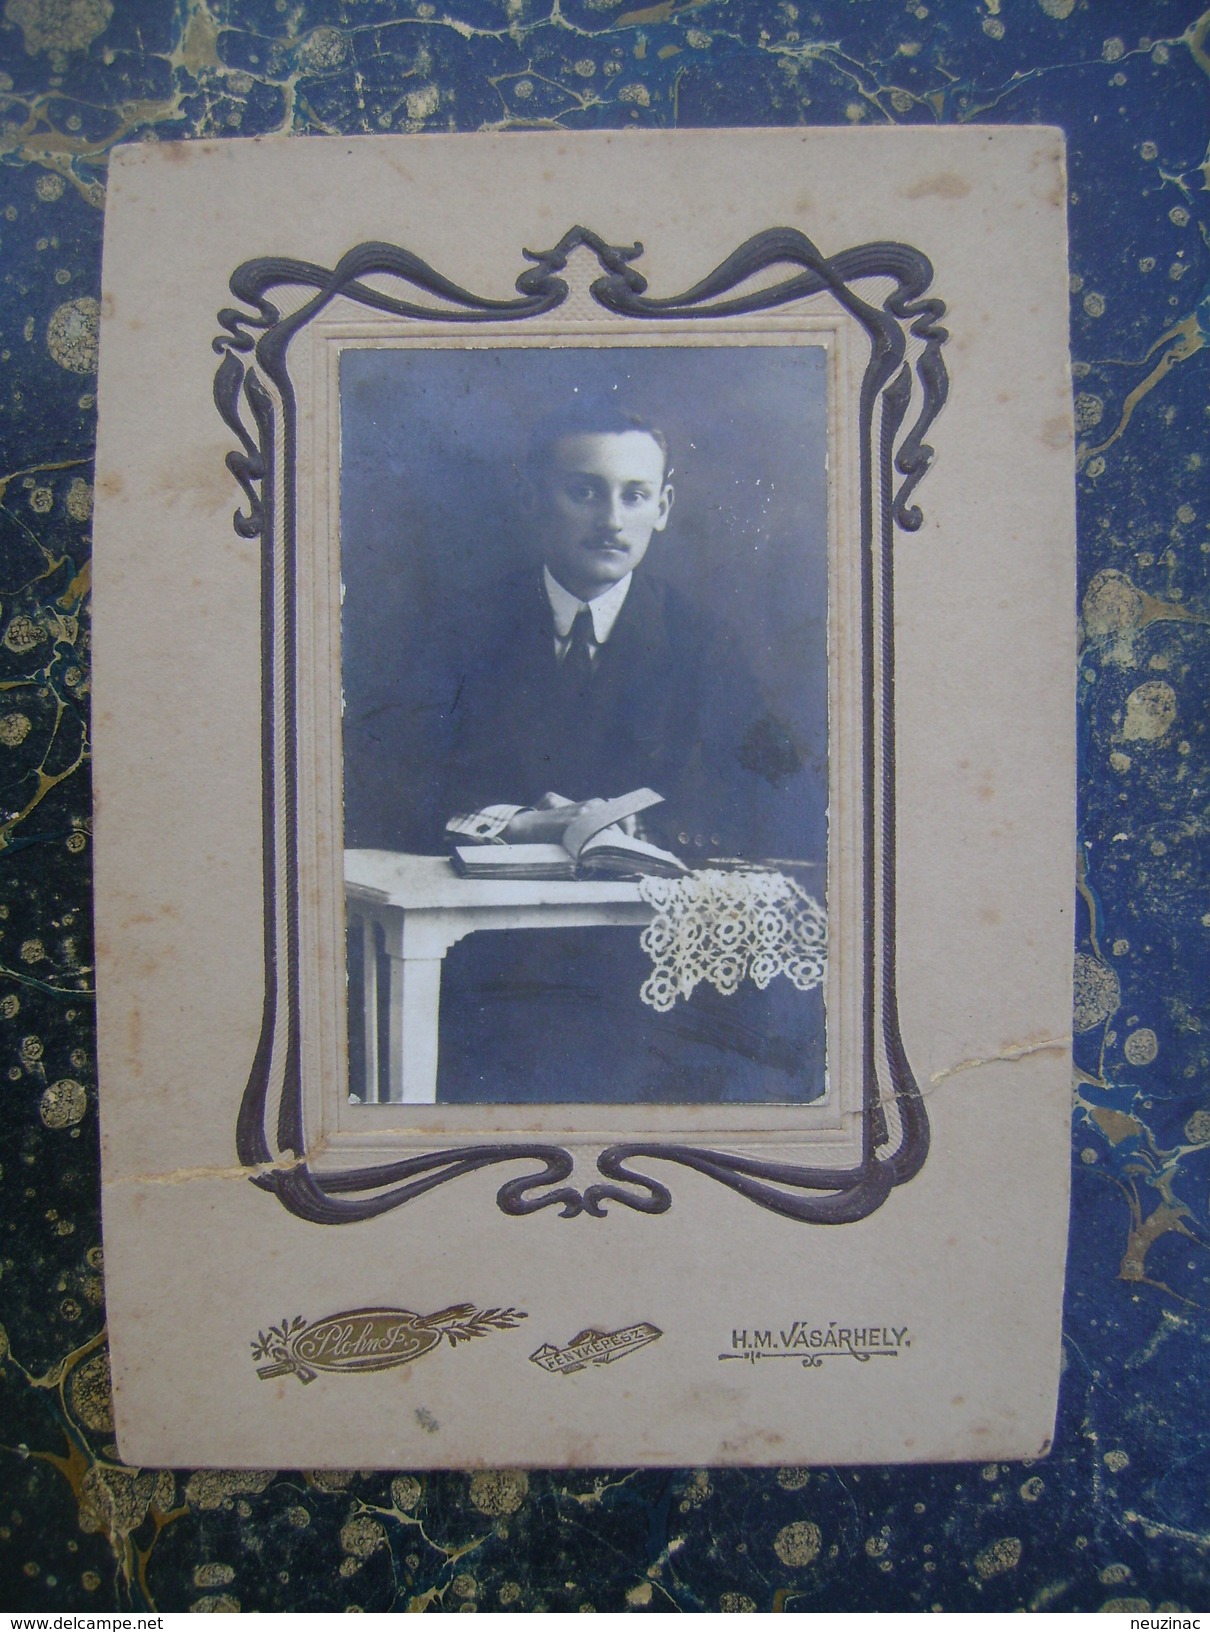 Hungary-H.M.Vasarheli-photograhfer Plofn F.-122x170mm-cca 1900  (3846) - Old (before 1900)